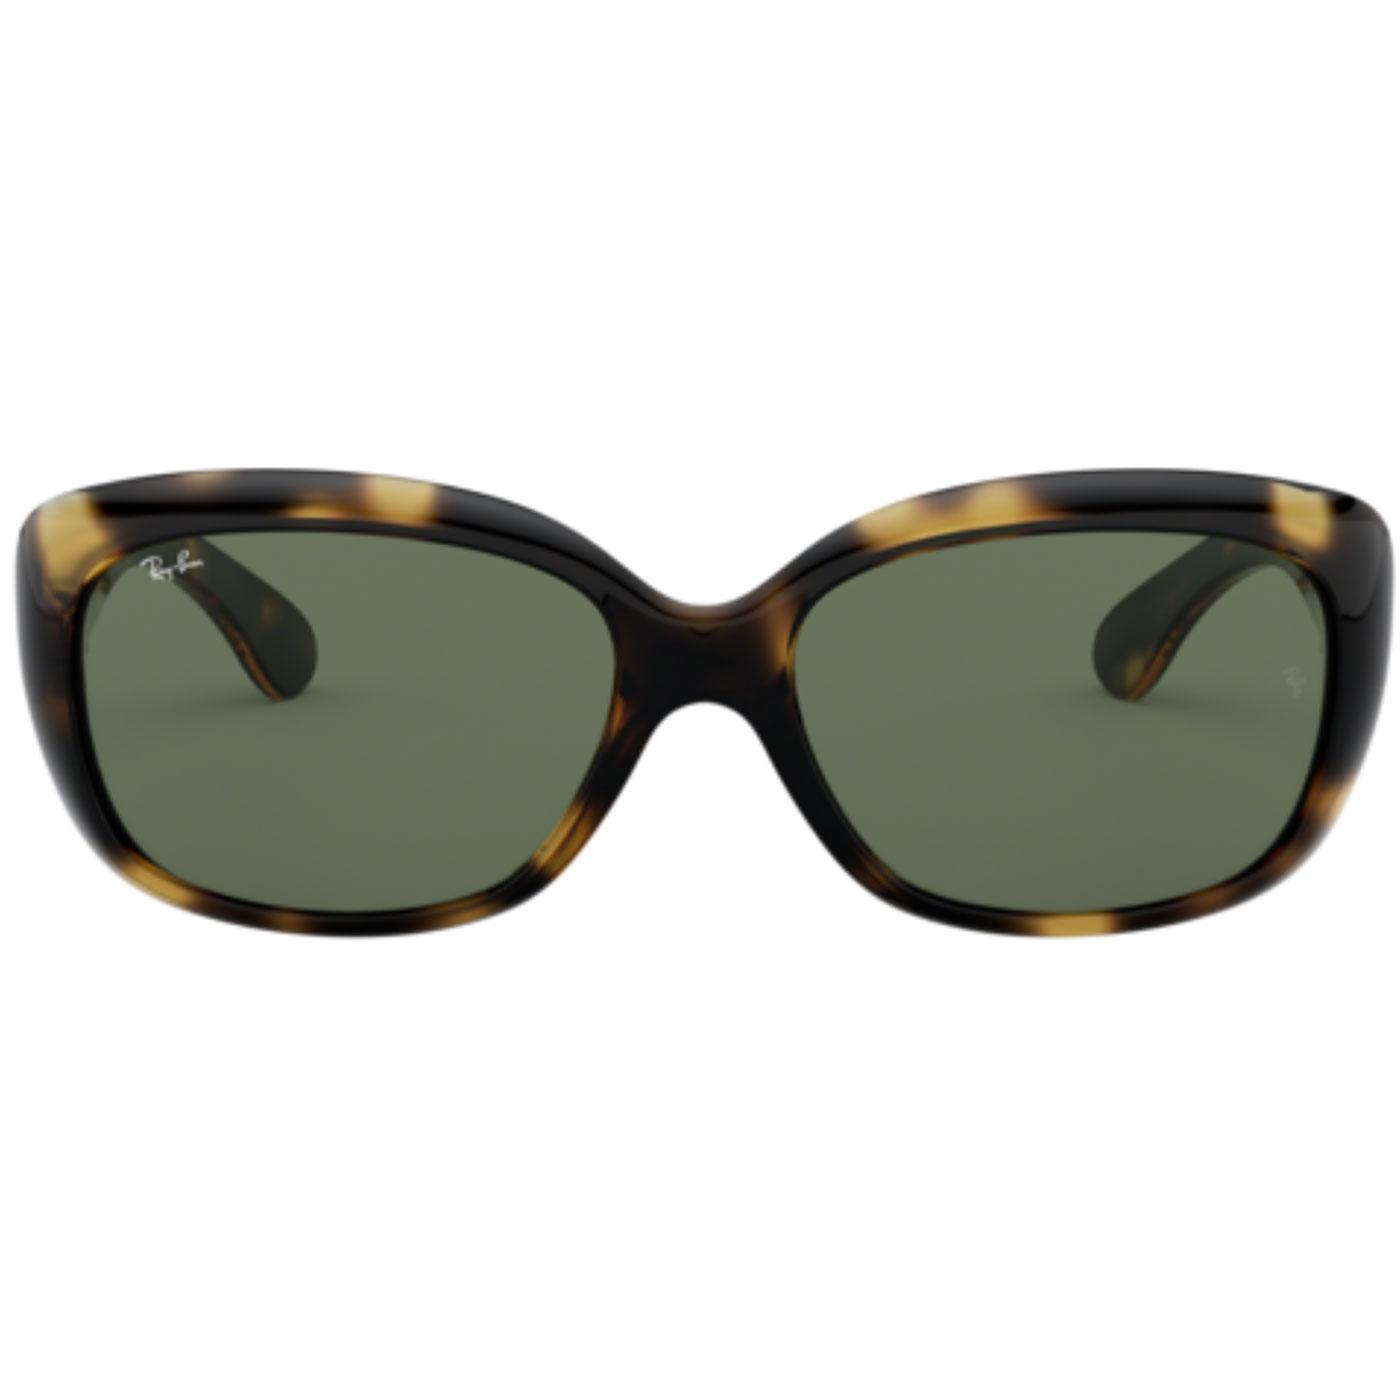 Jackie Ohh Ray-Ban Retro 60s Cats Eye Sunglasses H